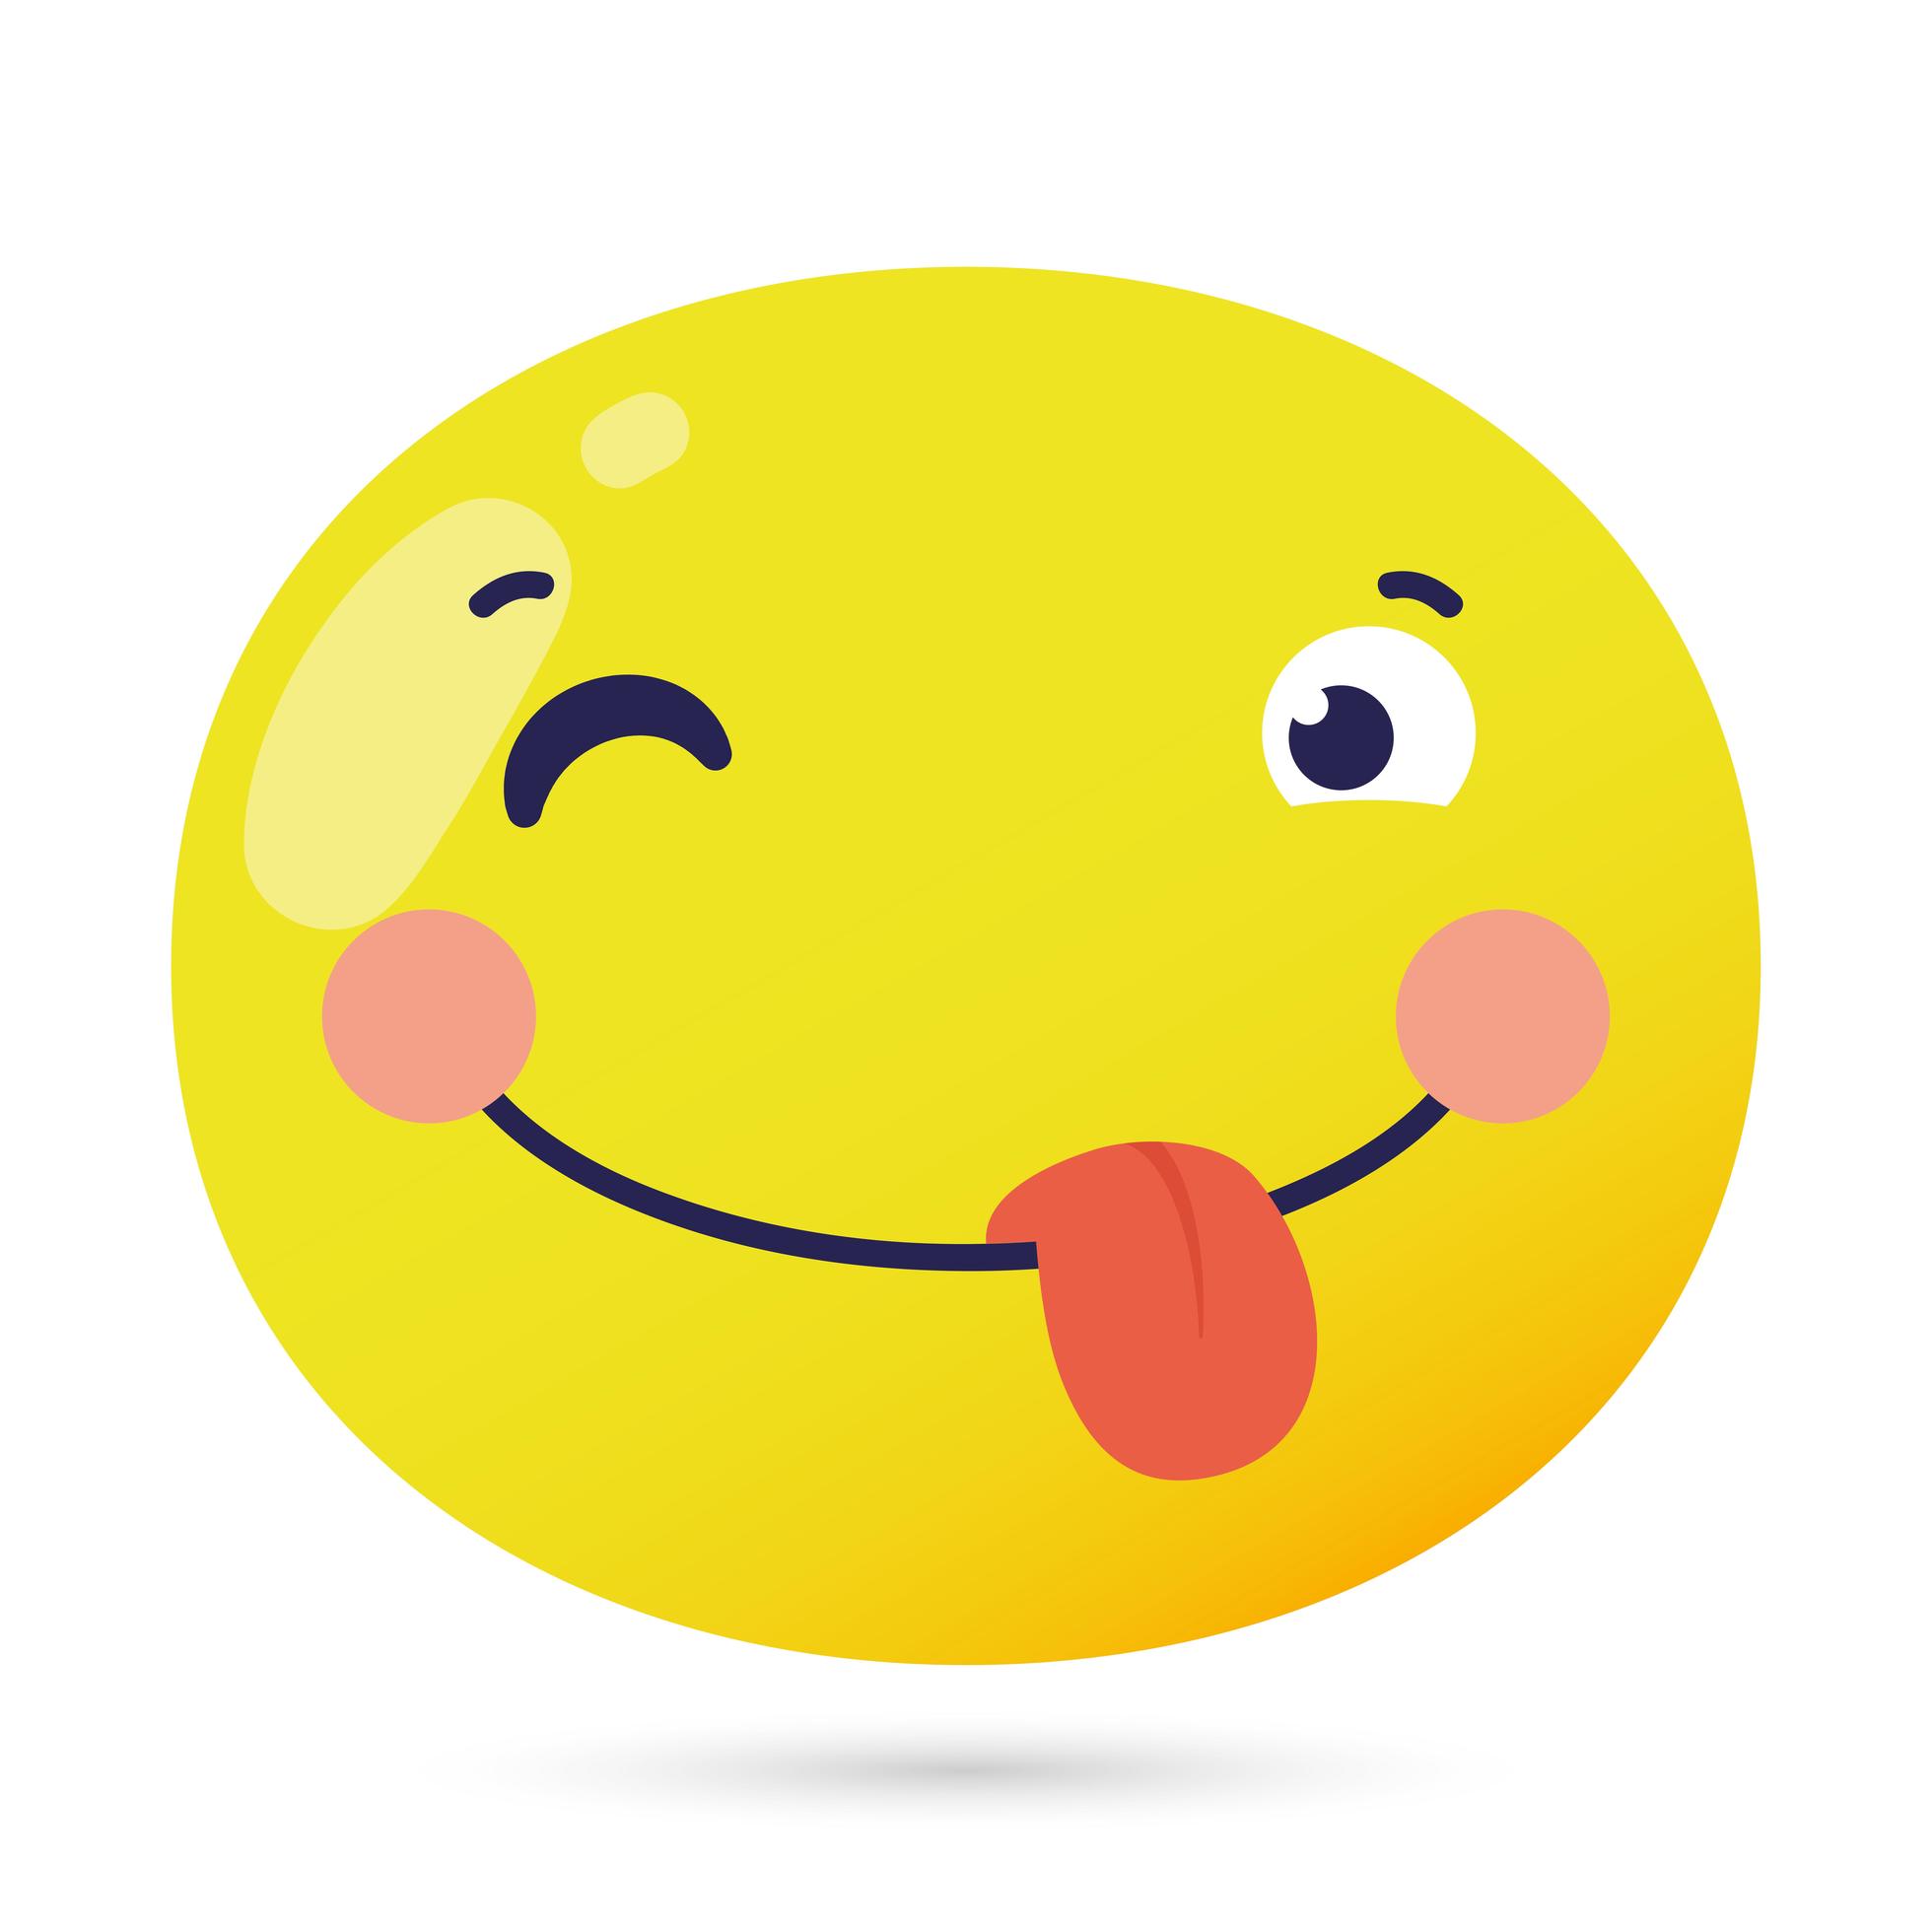 emoji face crazy funny character - Download Free Vectors, Clipart ...
